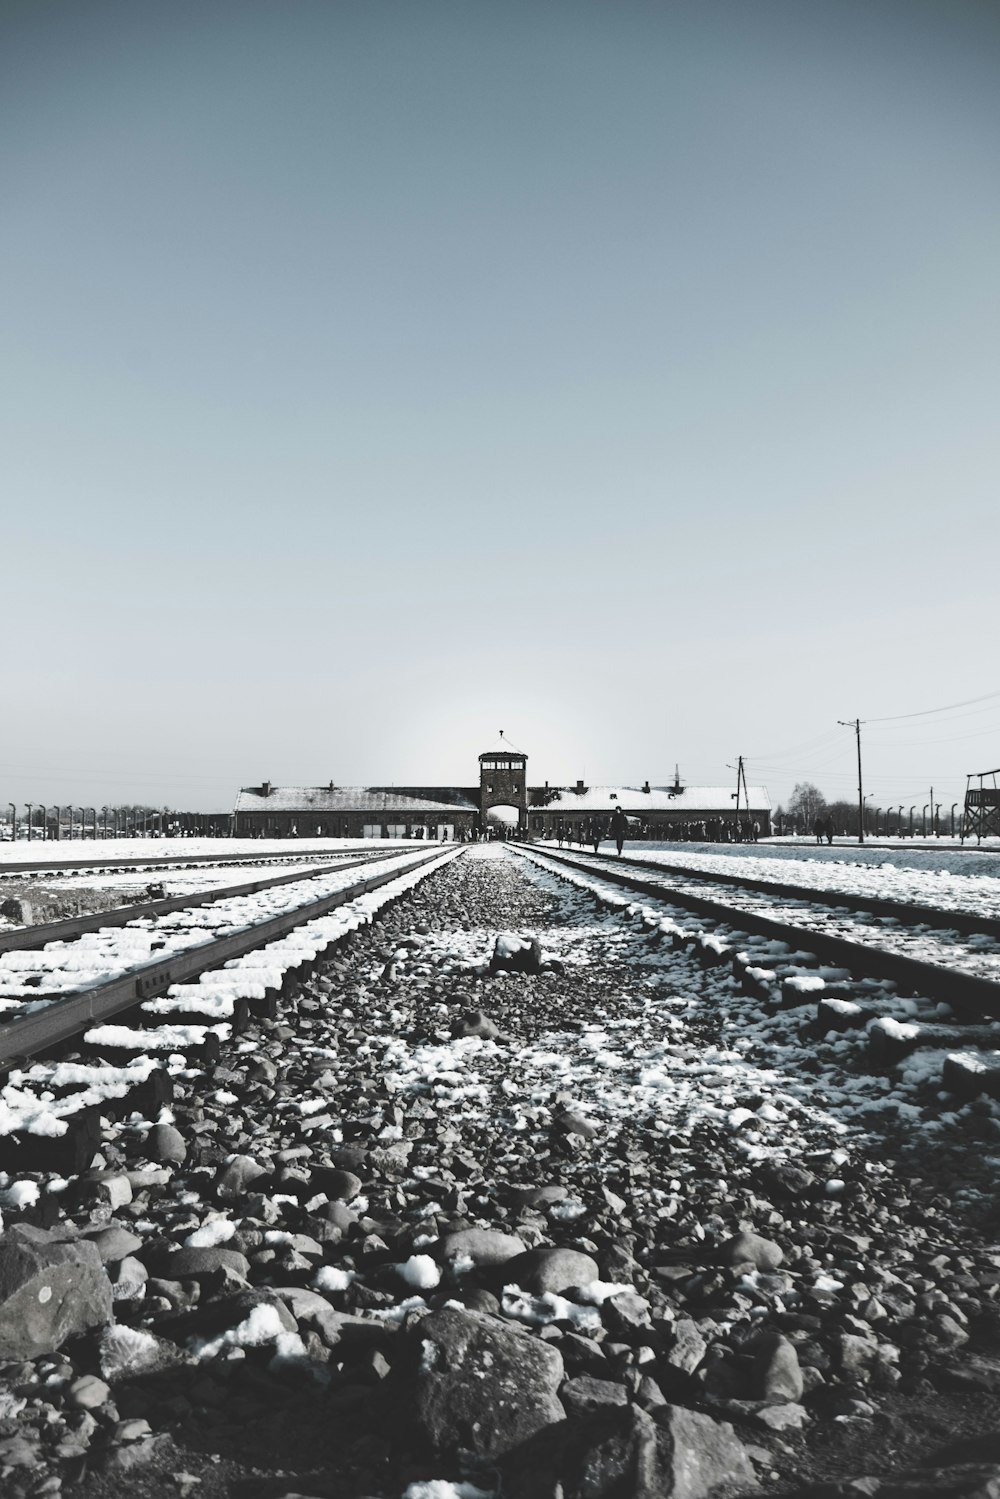 Fotografía de ferrocarril y estación